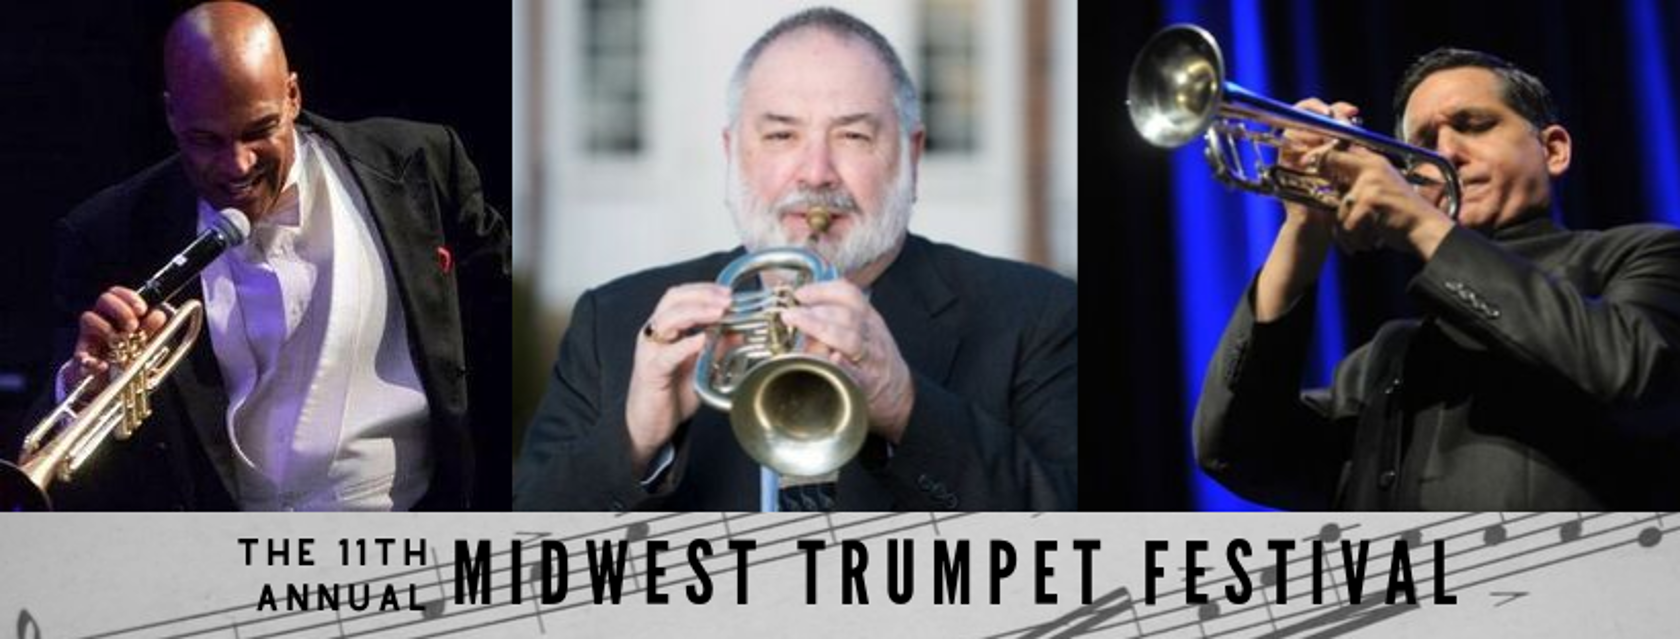 Midwest Trumpet Festival